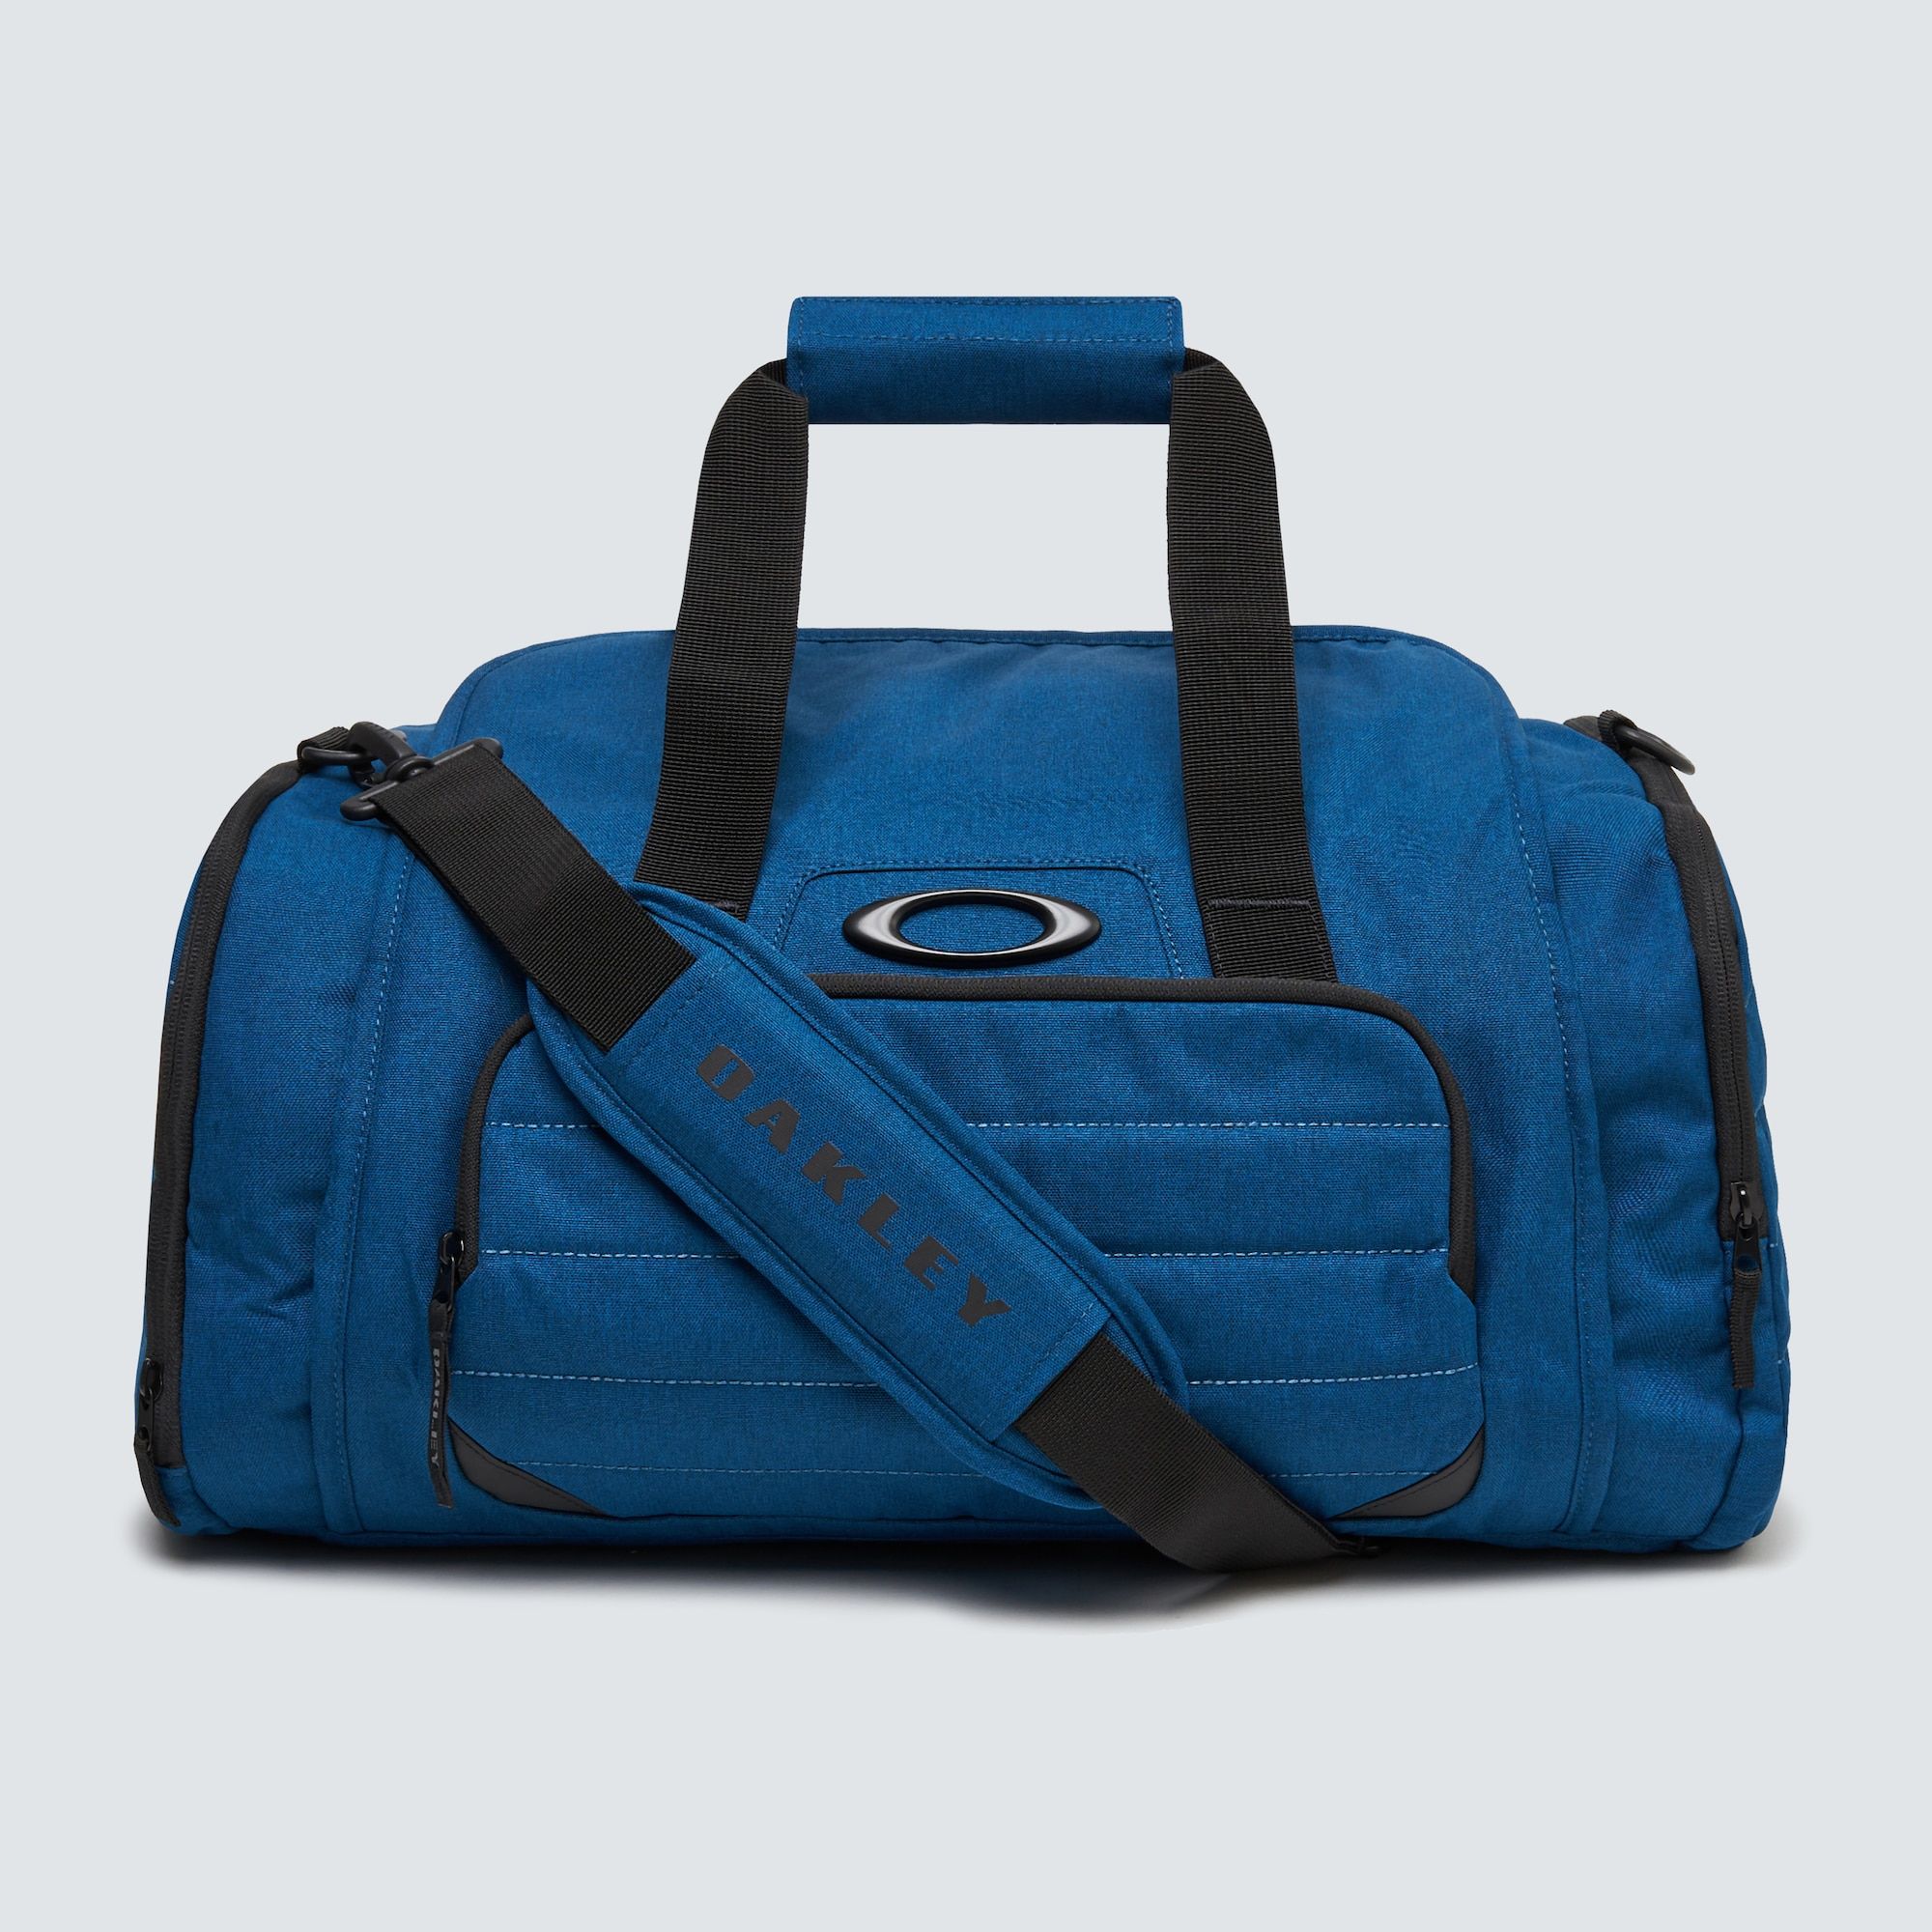  Oakley Enduro 3.0 Duffel Bag - Poseidon 